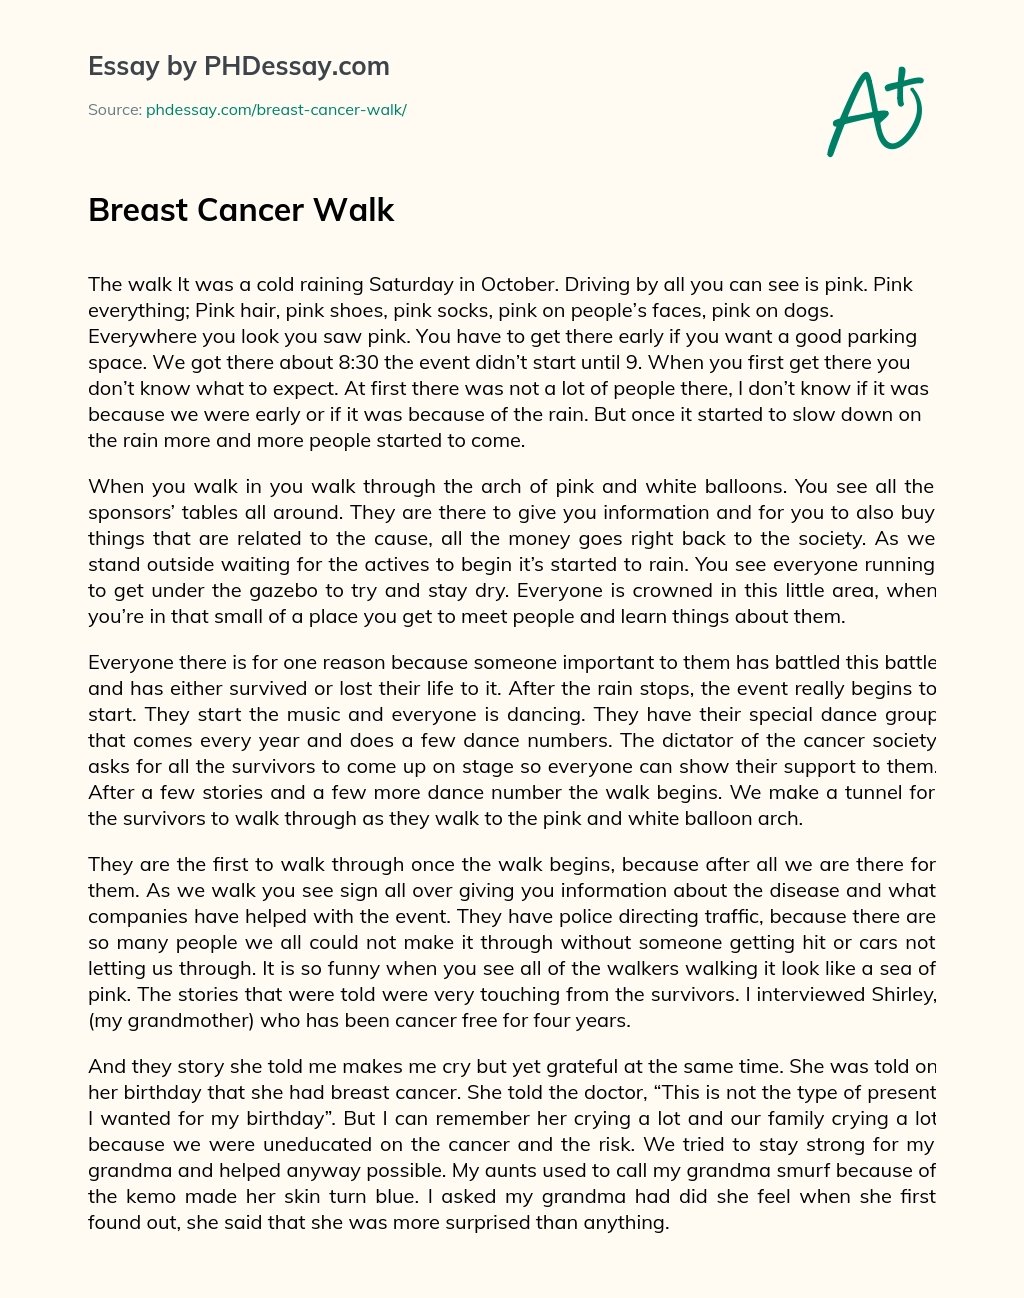 Breast Cancer Walk essay